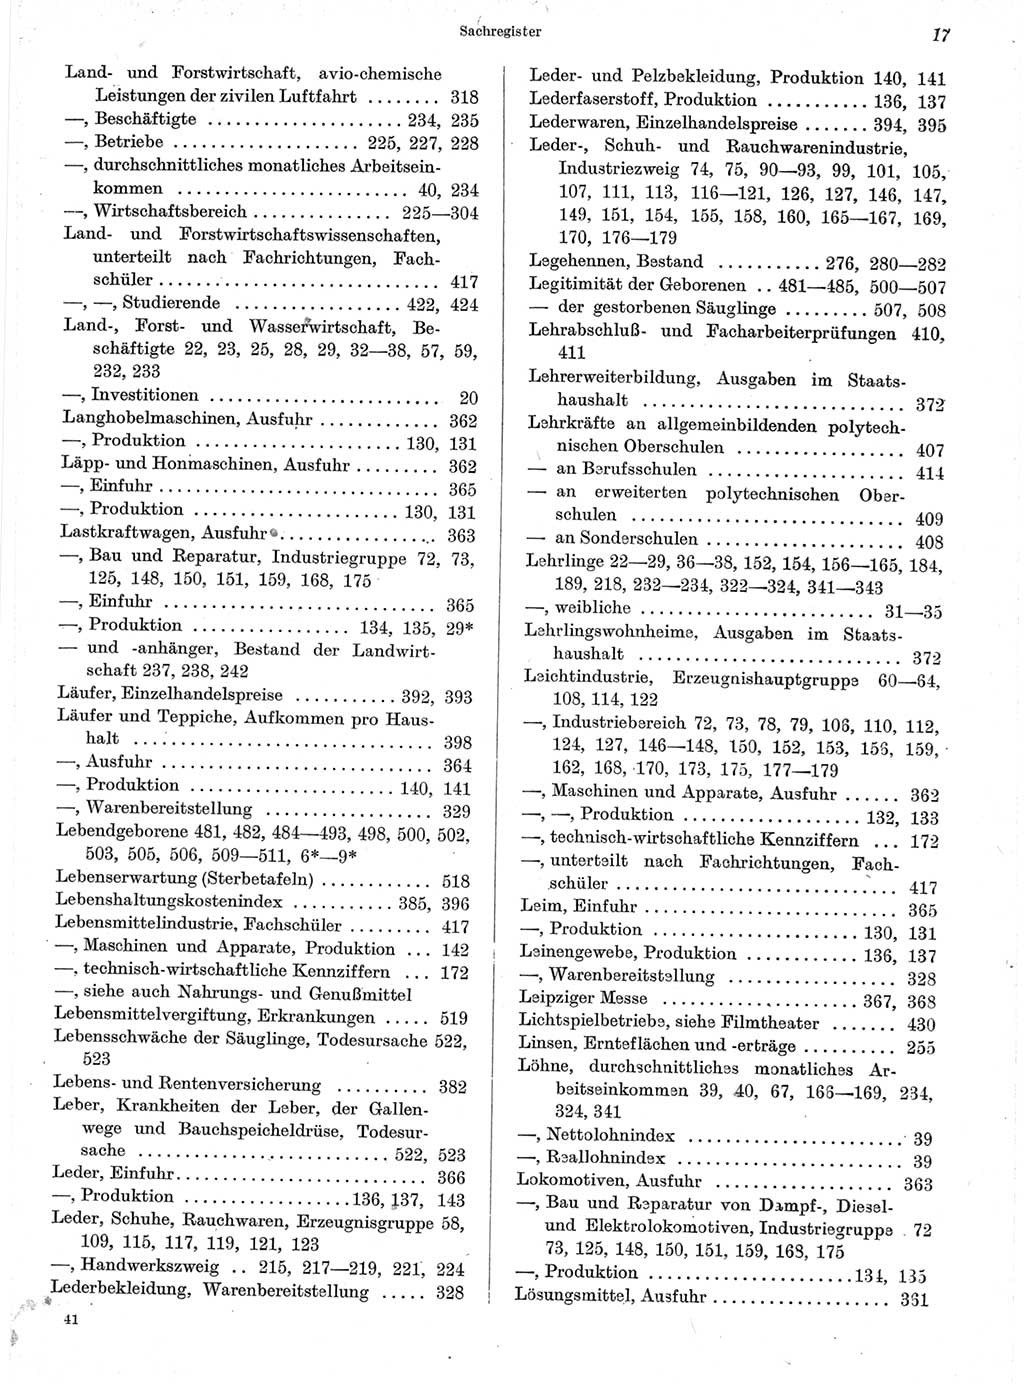 Statistisches Jahrbuch der Deutschen Demokratischen Republik (DDR) 1963, Seite 17 (Stat. Jb. DDR 1963, S. 17)